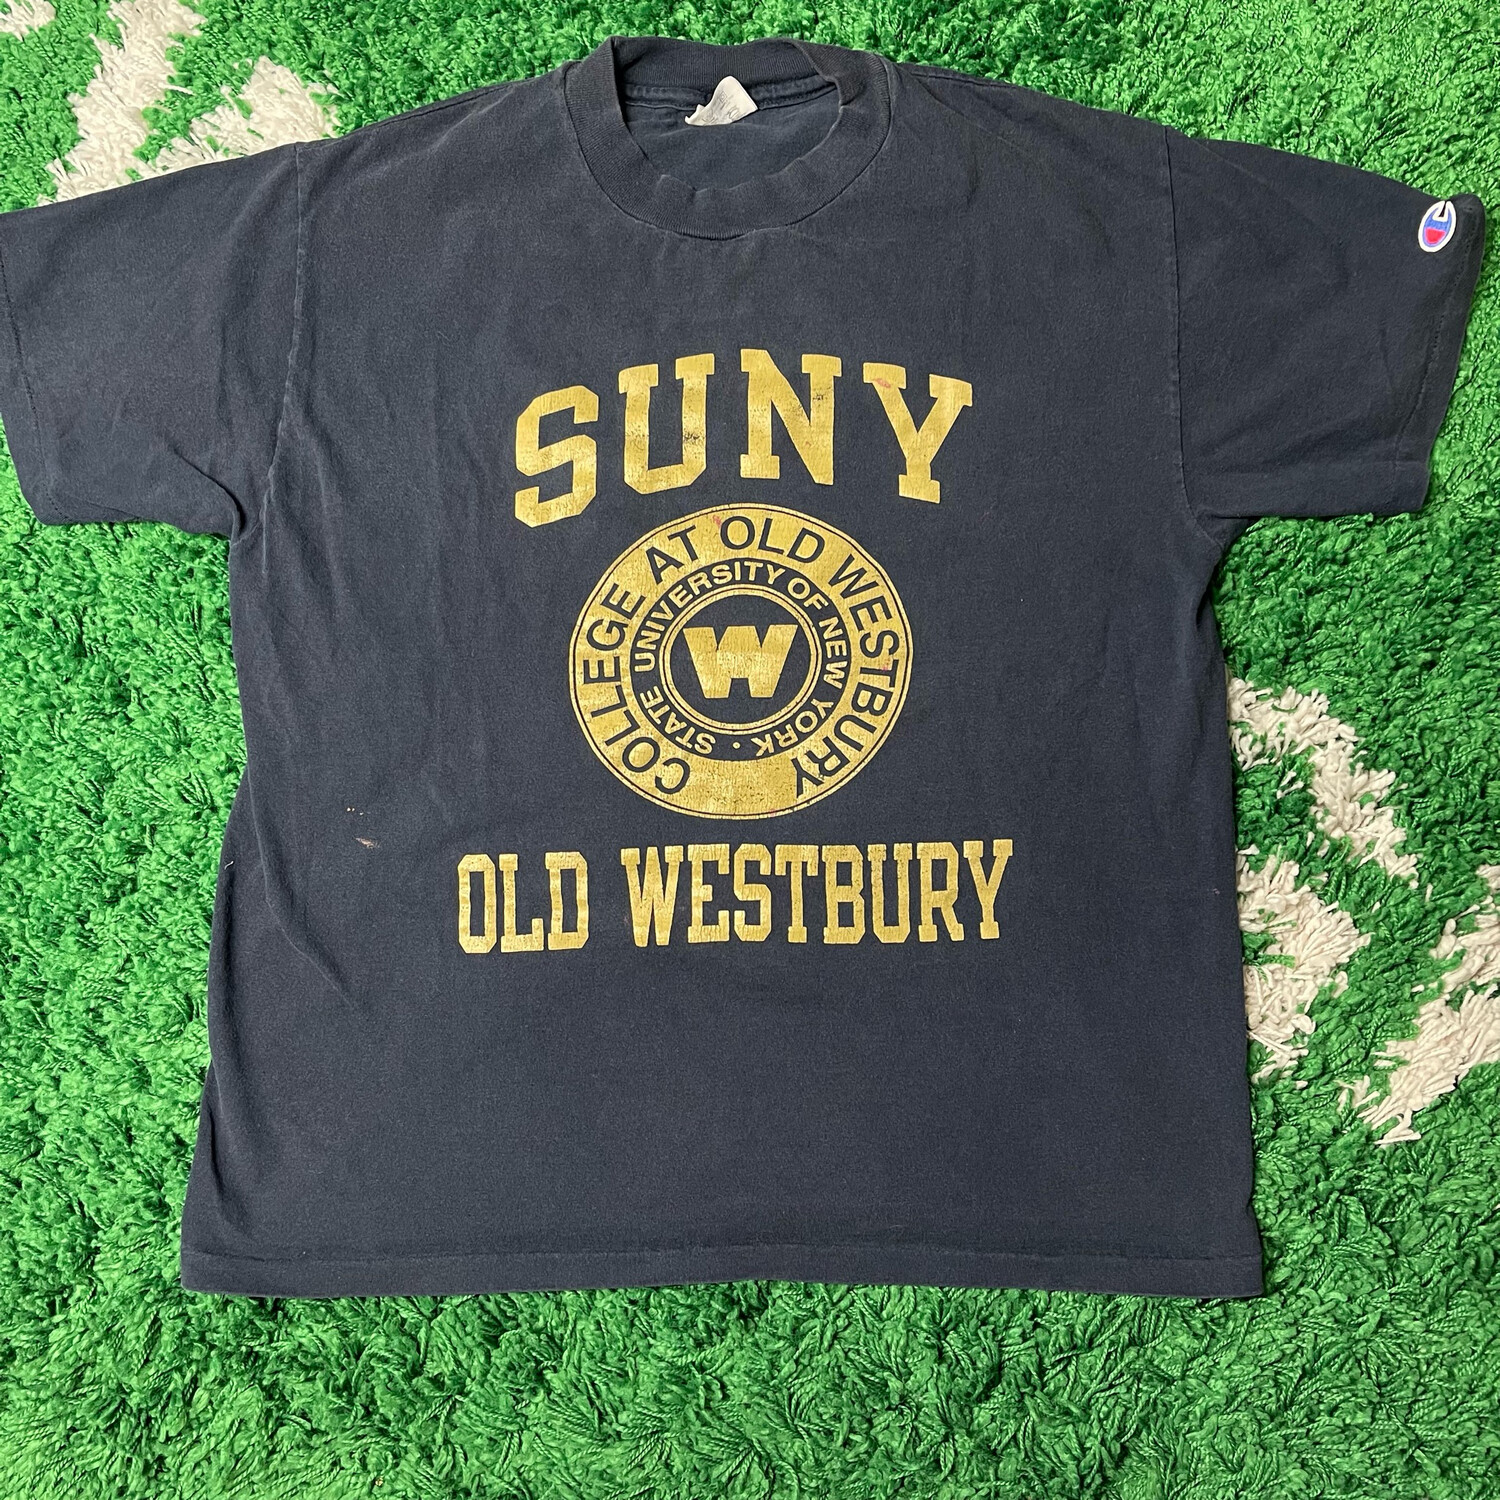 SUNY Old Westbury Champion Tee Size Large